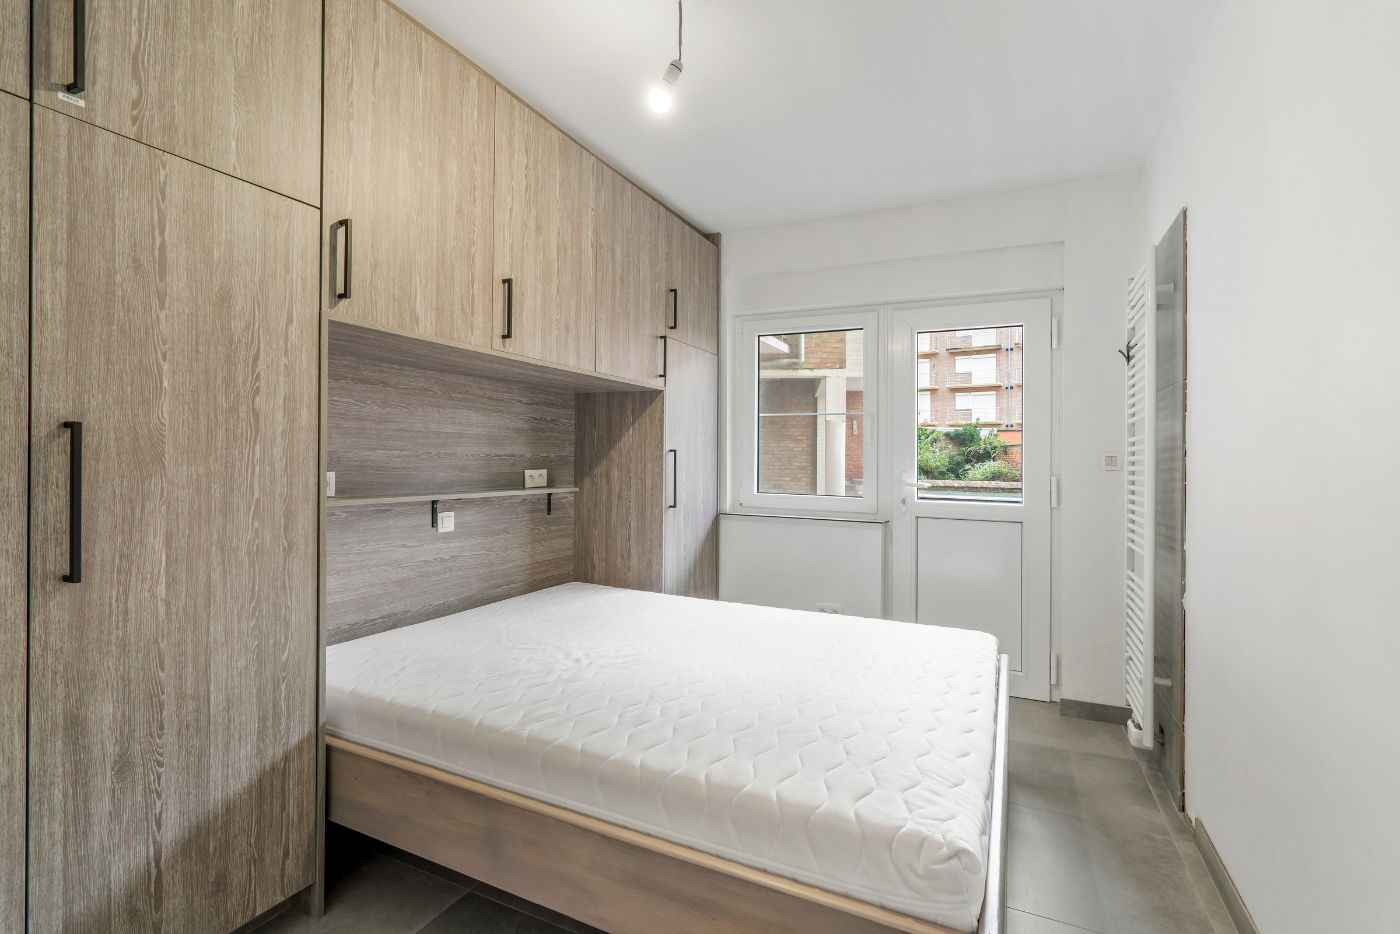 Koksijde-Zeedijk - Gelijkvloers appartement met 3 slaapkamers en frontaal zeezicht inclusief garage - Residentie Le Provence foto 13